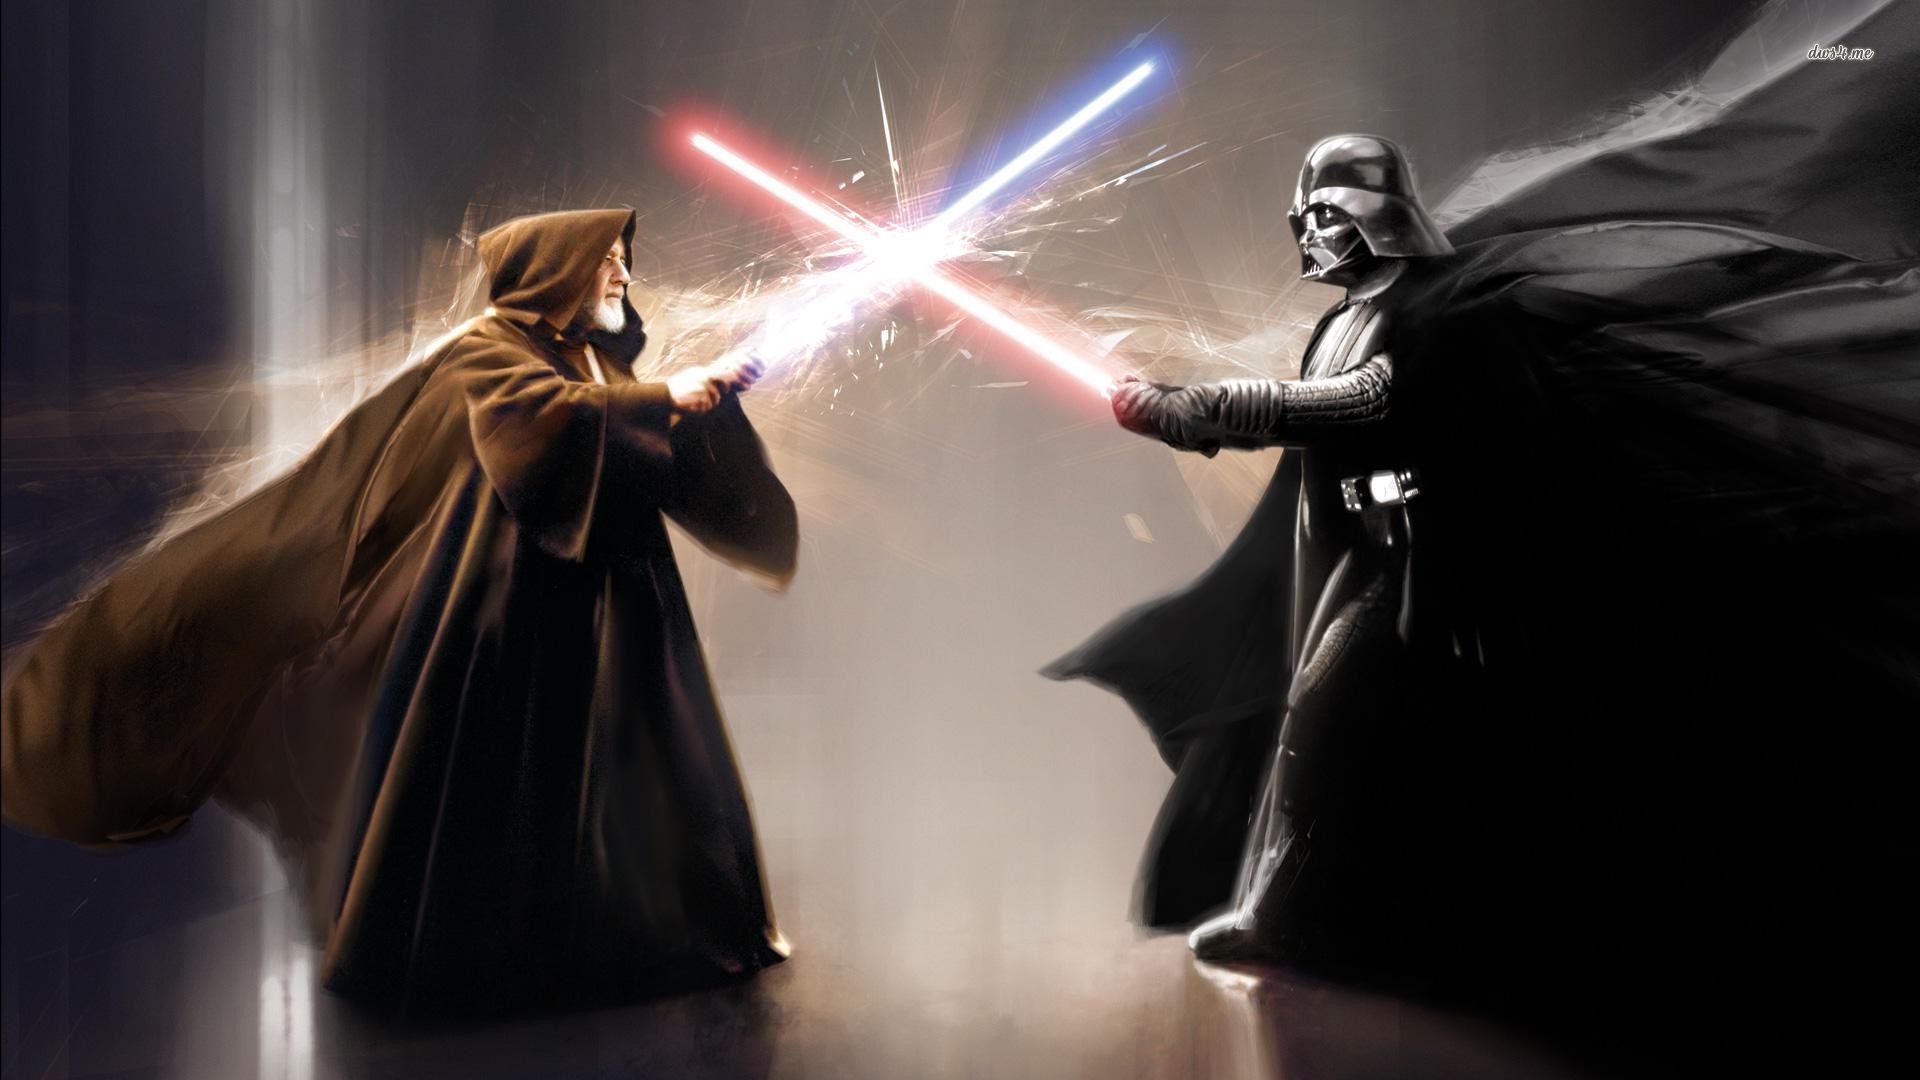 Kenobi vs Vader. Star wars wallpaper, Darth vader, Star wars episode iv